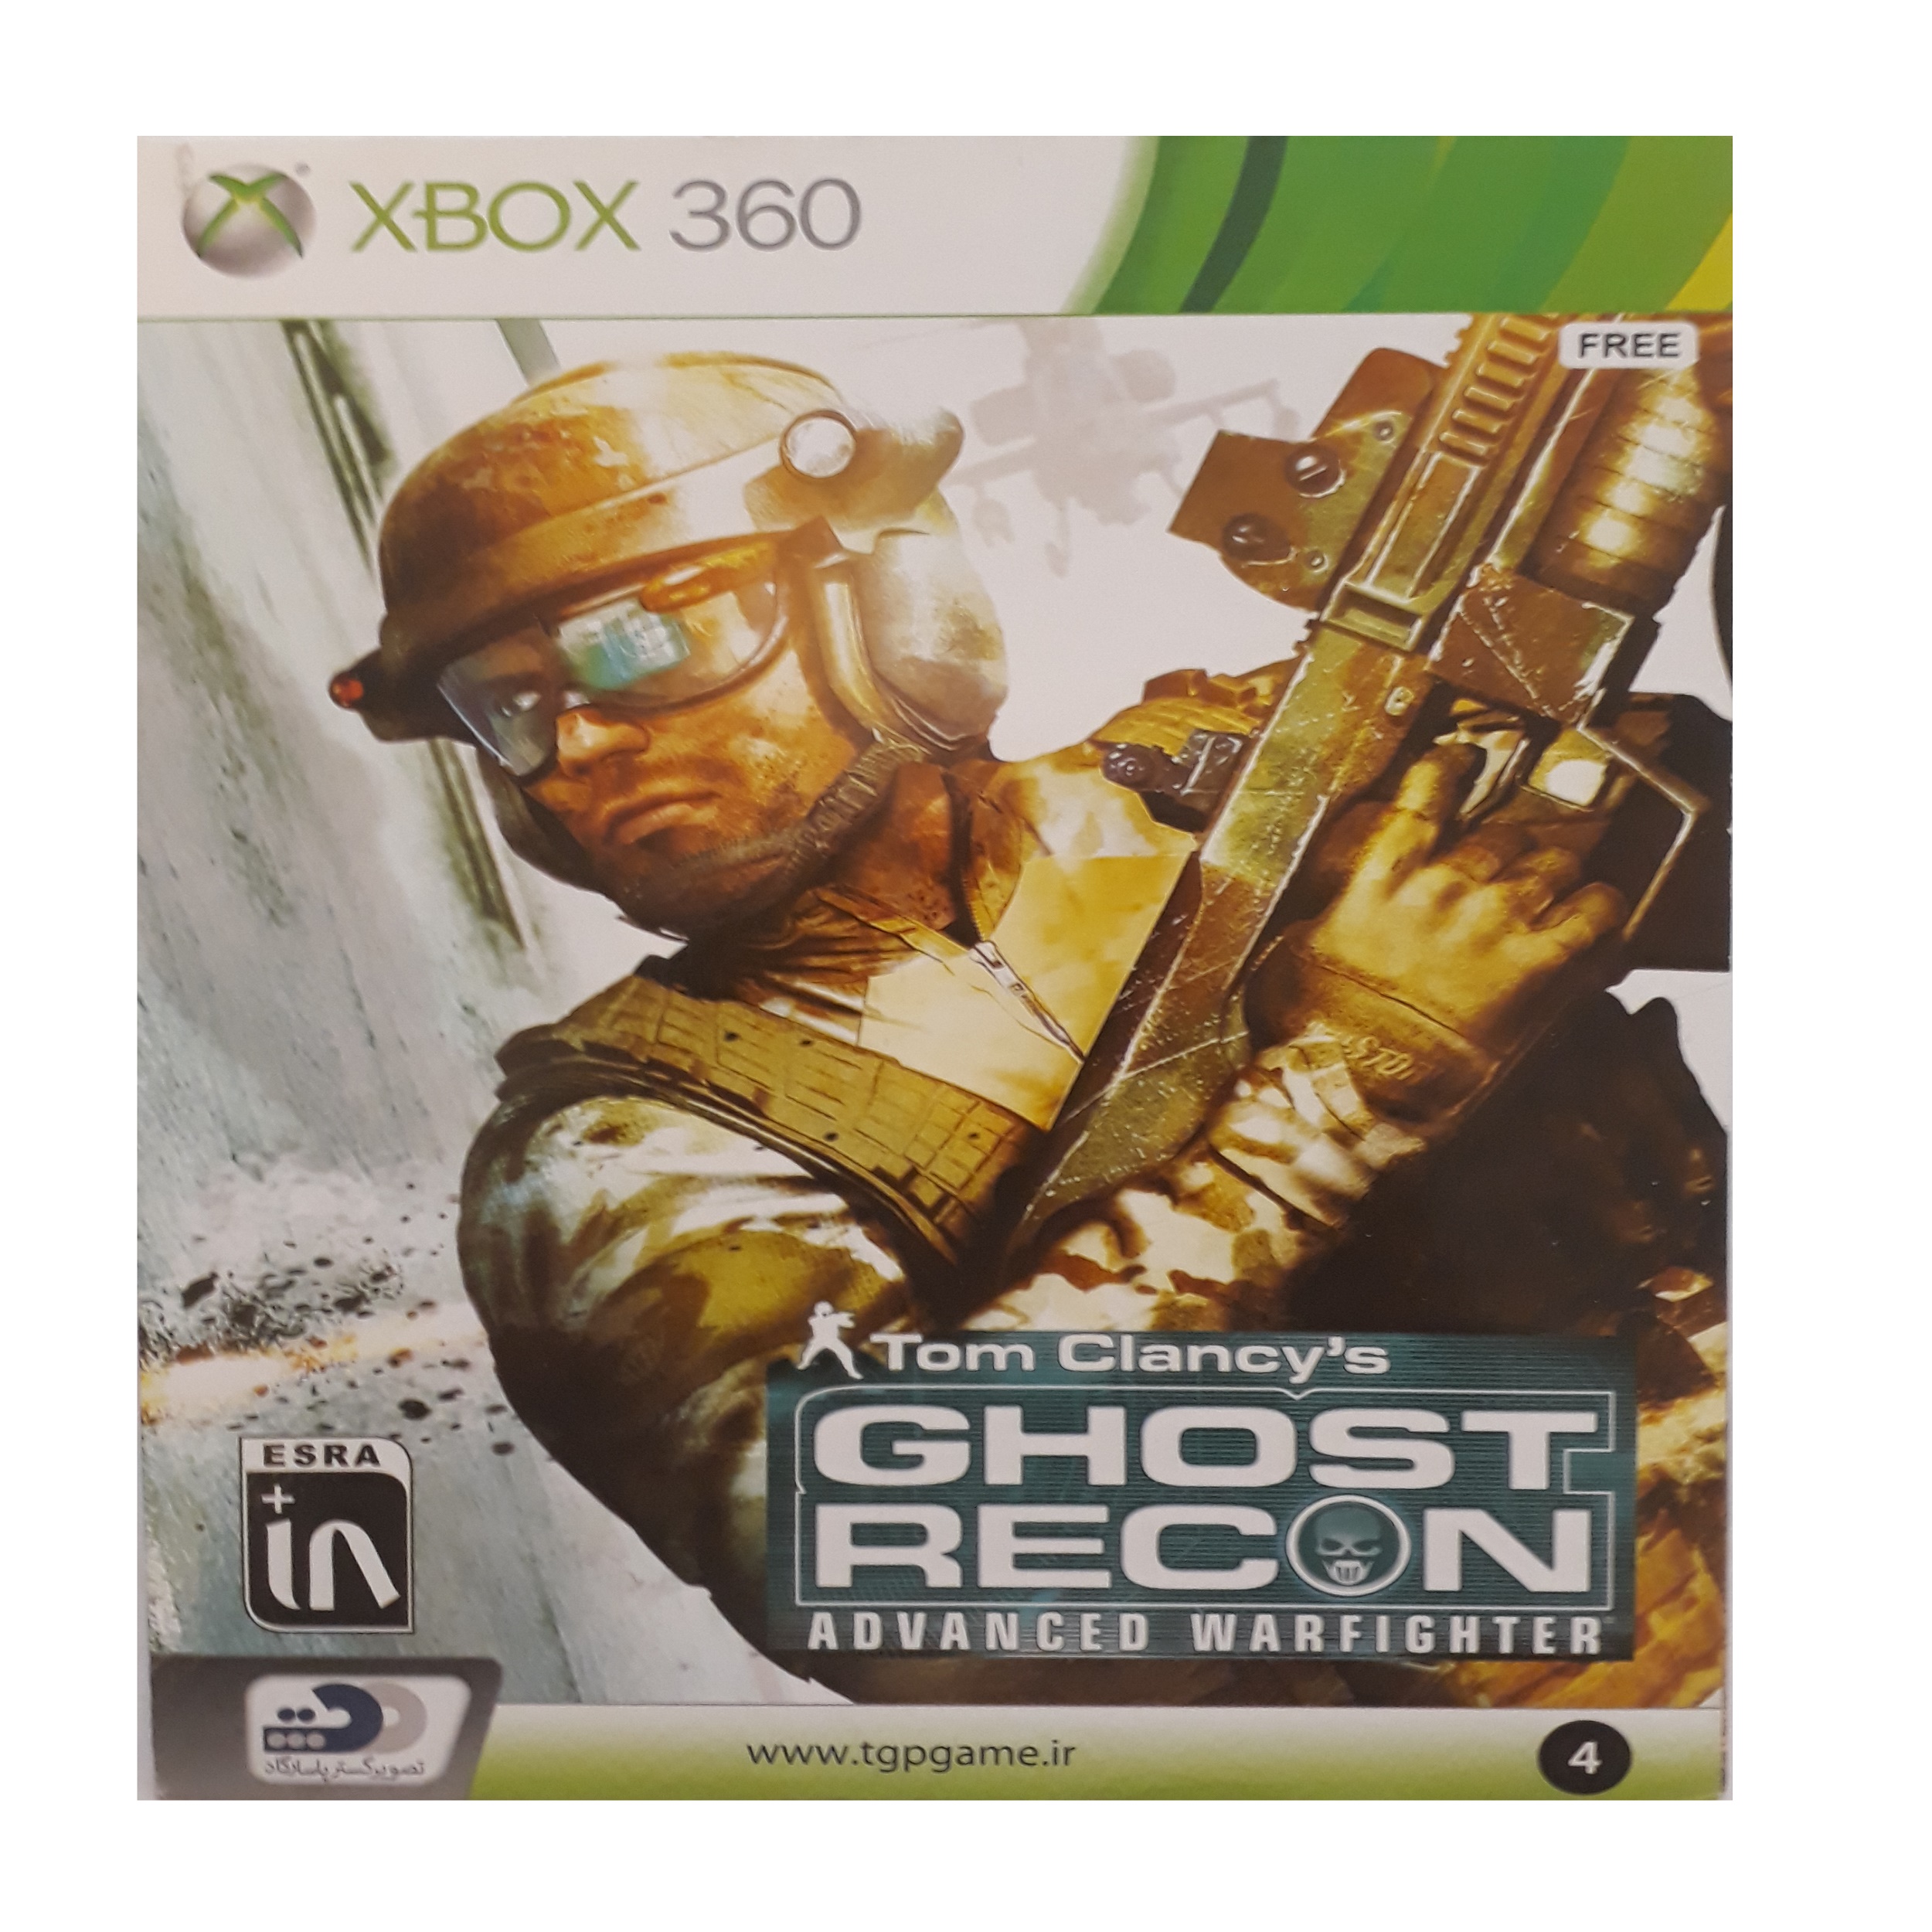 بازی ghost recon مخصوص xbox 360